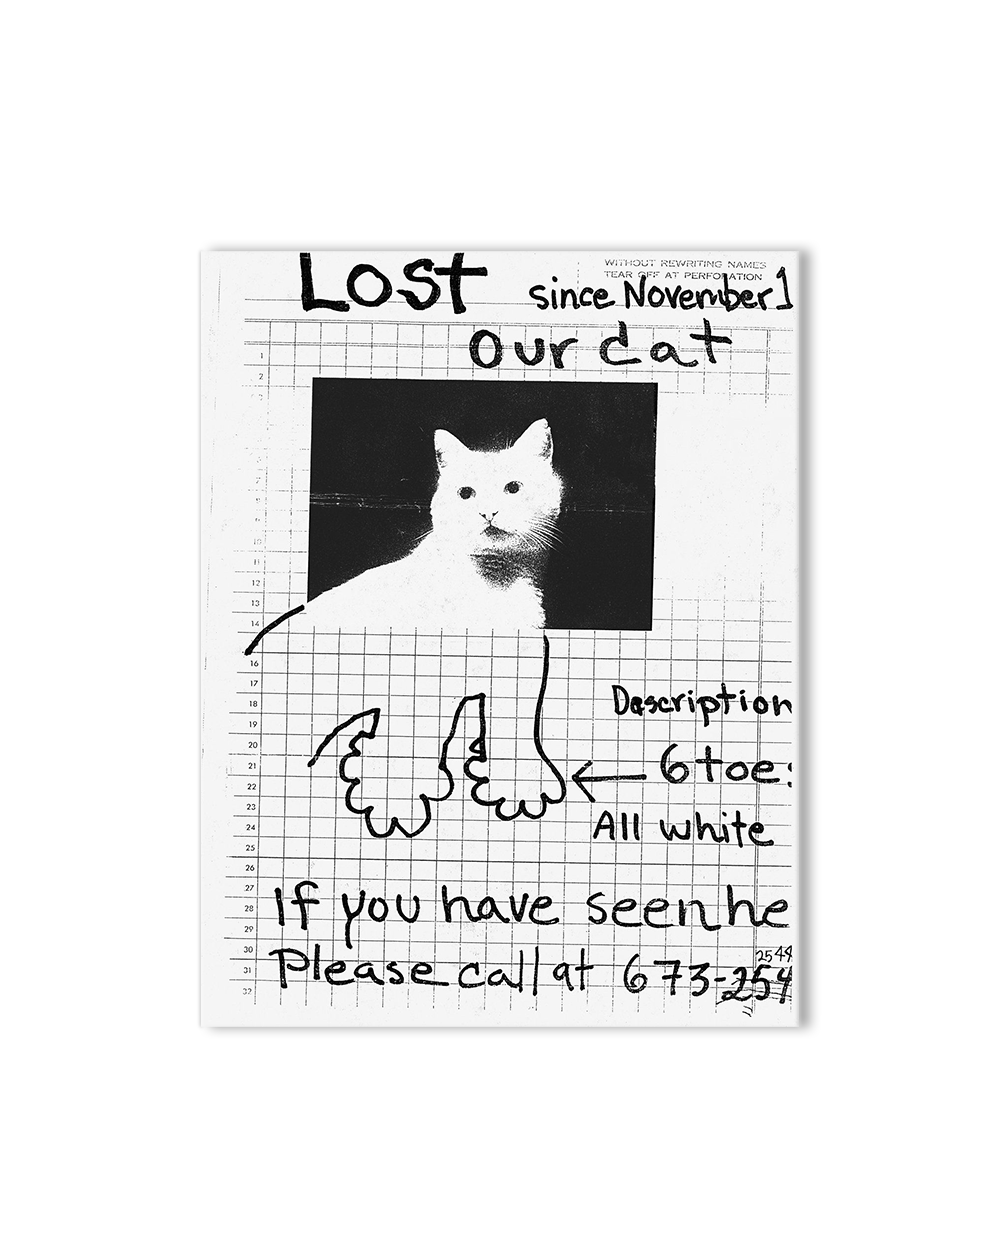 Still Missing - The Folk Art of Pet Posters